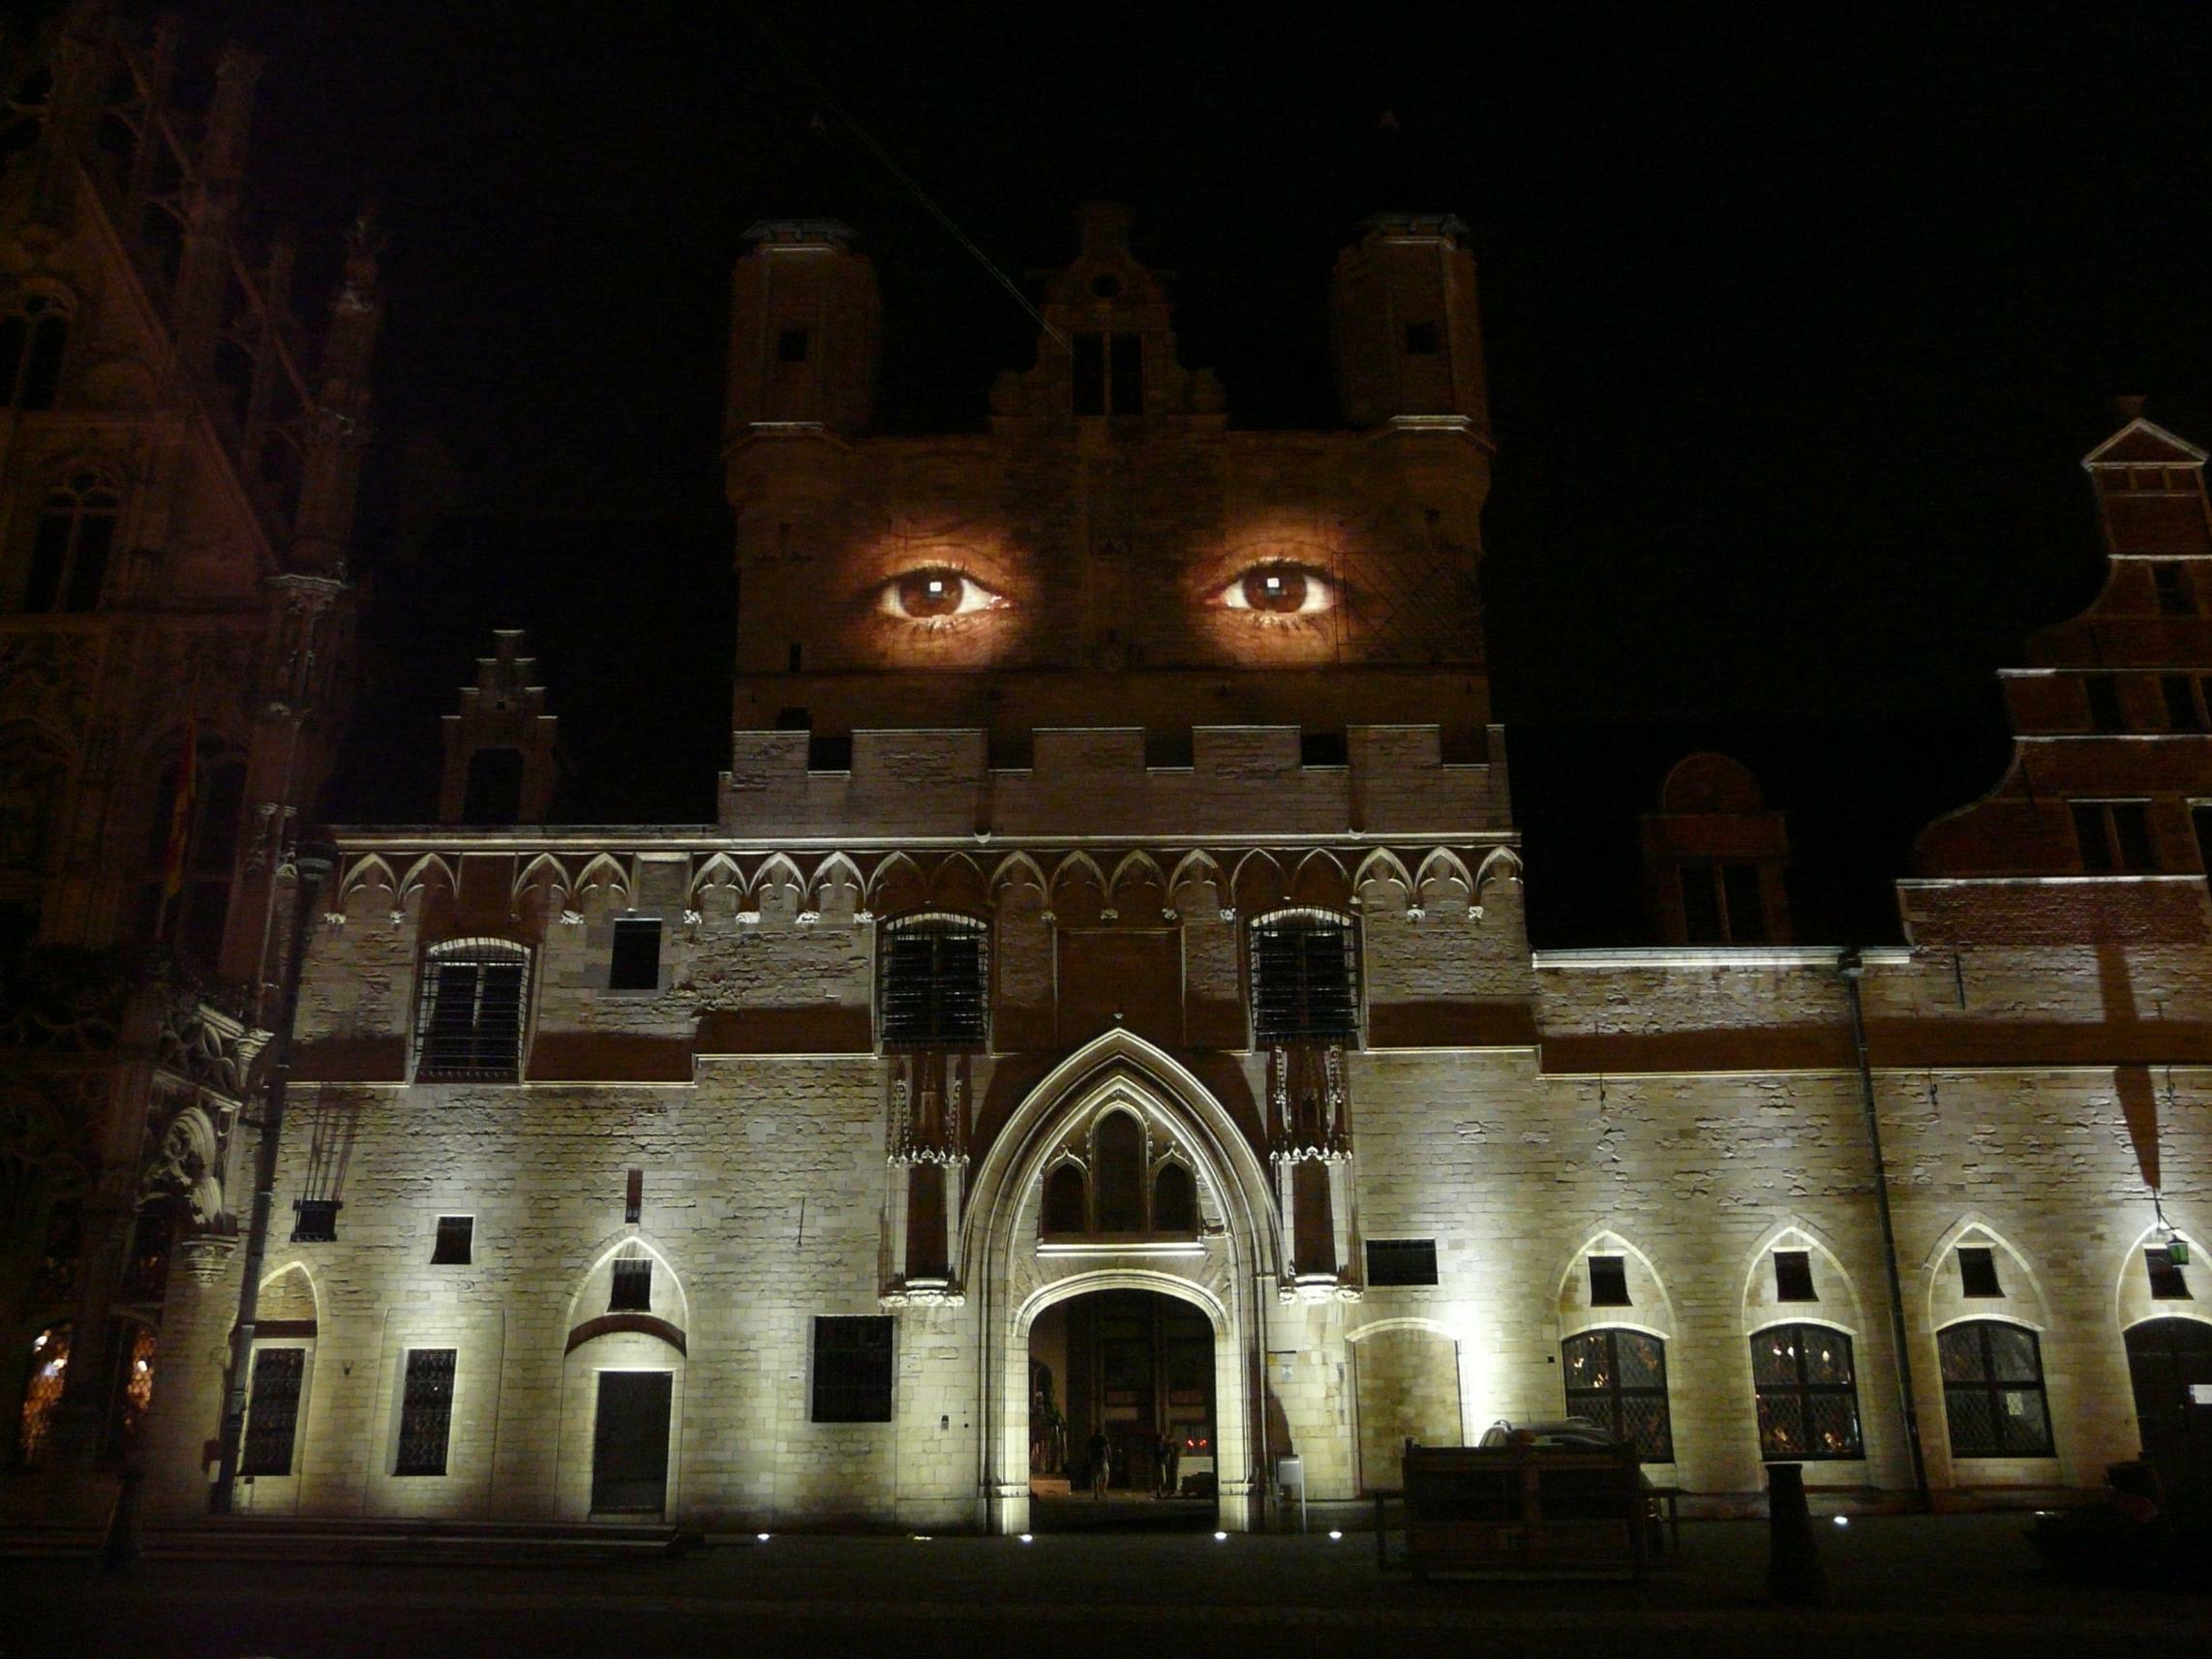 Krzysztof Wodiczko, Mechelen City Hall Projection, 2012